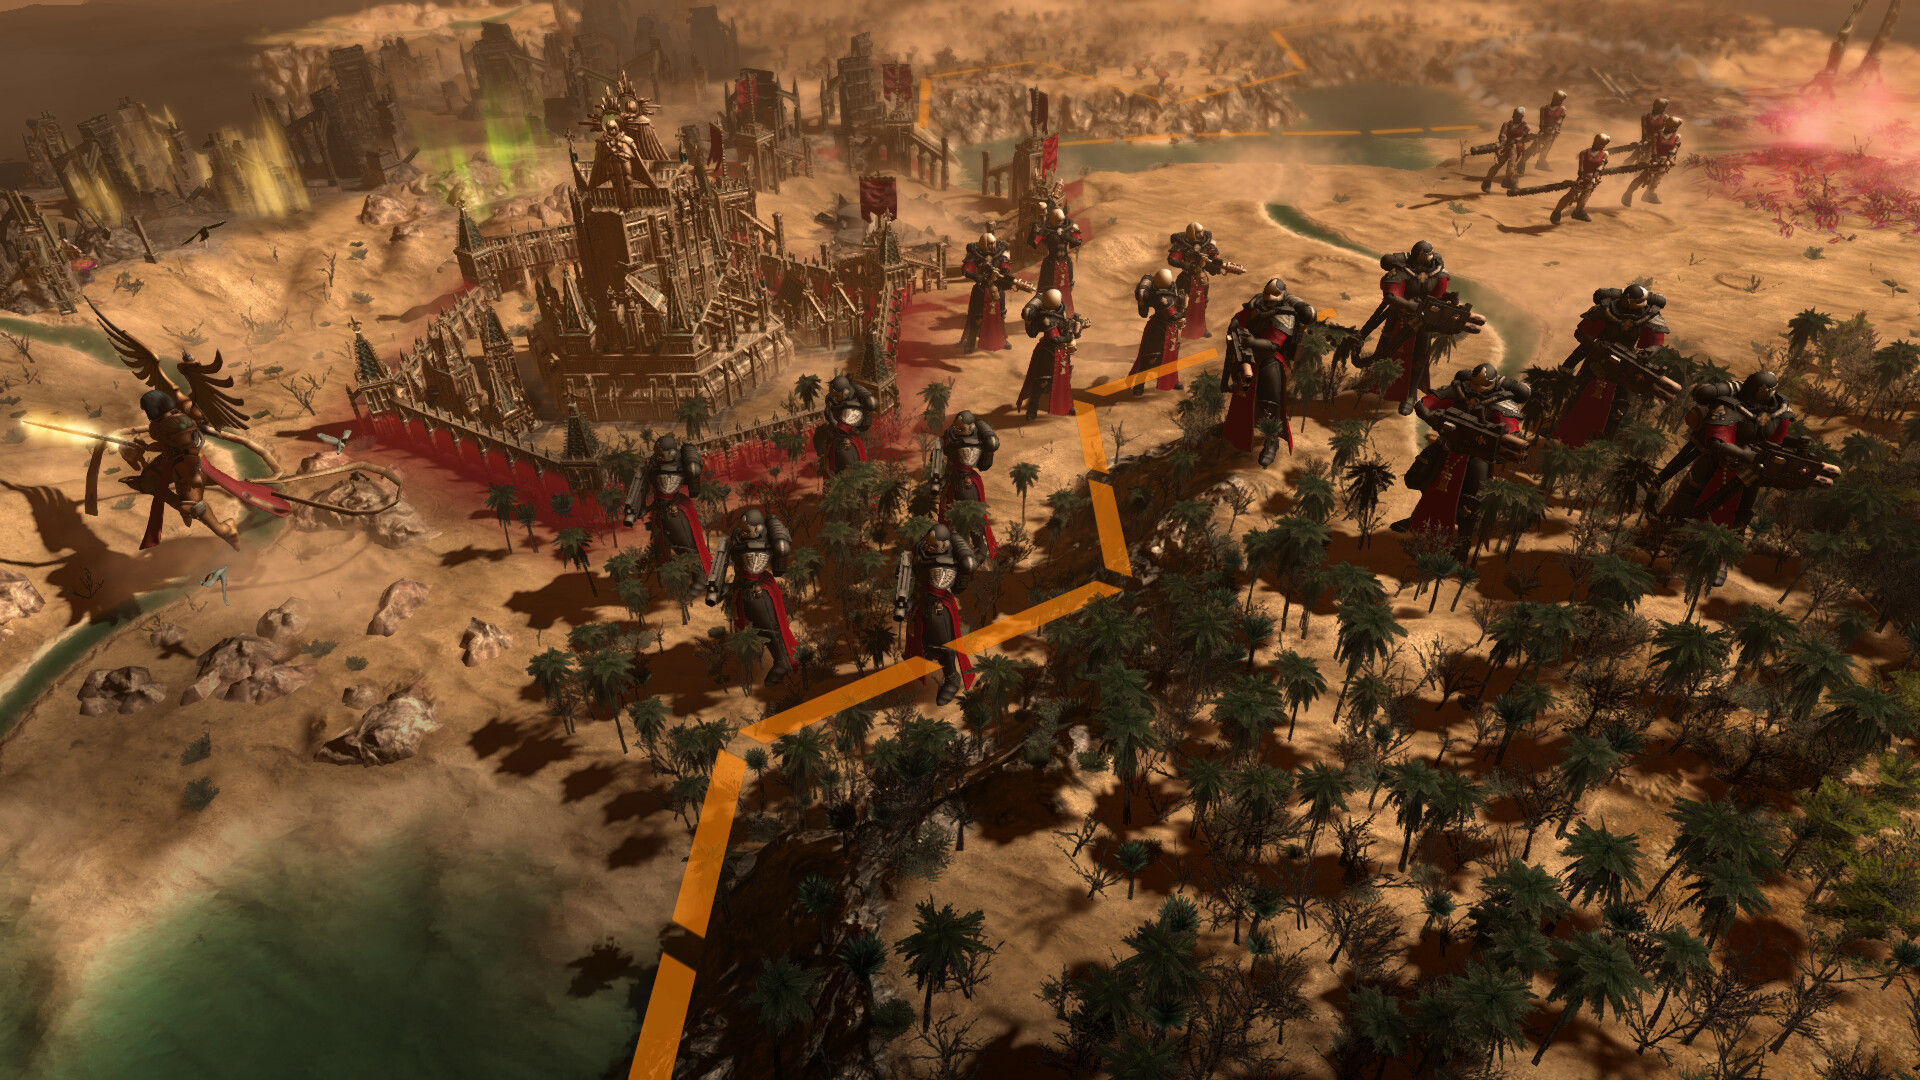 [$ 21.54] Warhammer 40,000: Gladius - Adepta Sororitas DLC Steam Altergift